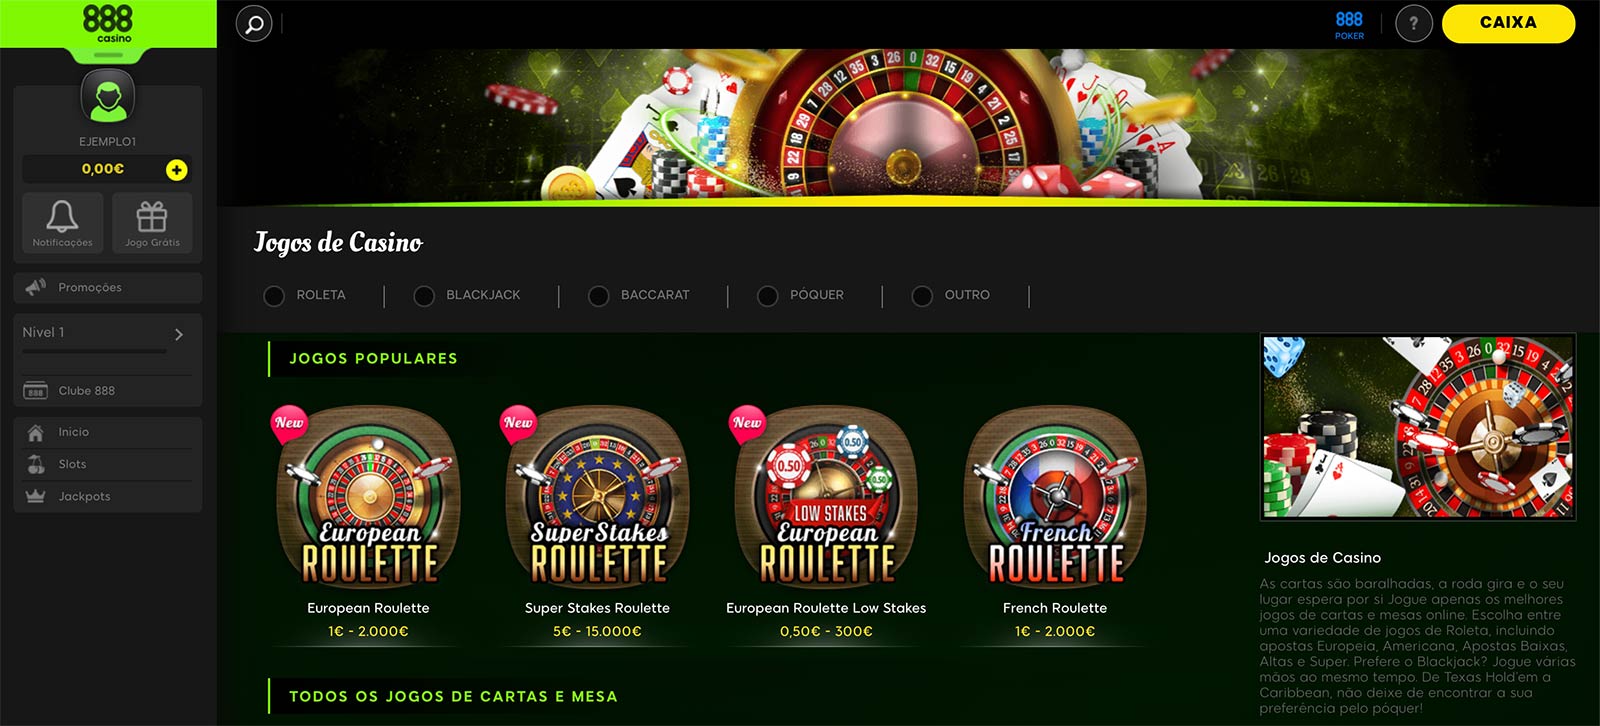 888 casino online gratis как получить бонус за регистрацию в казино вулкан